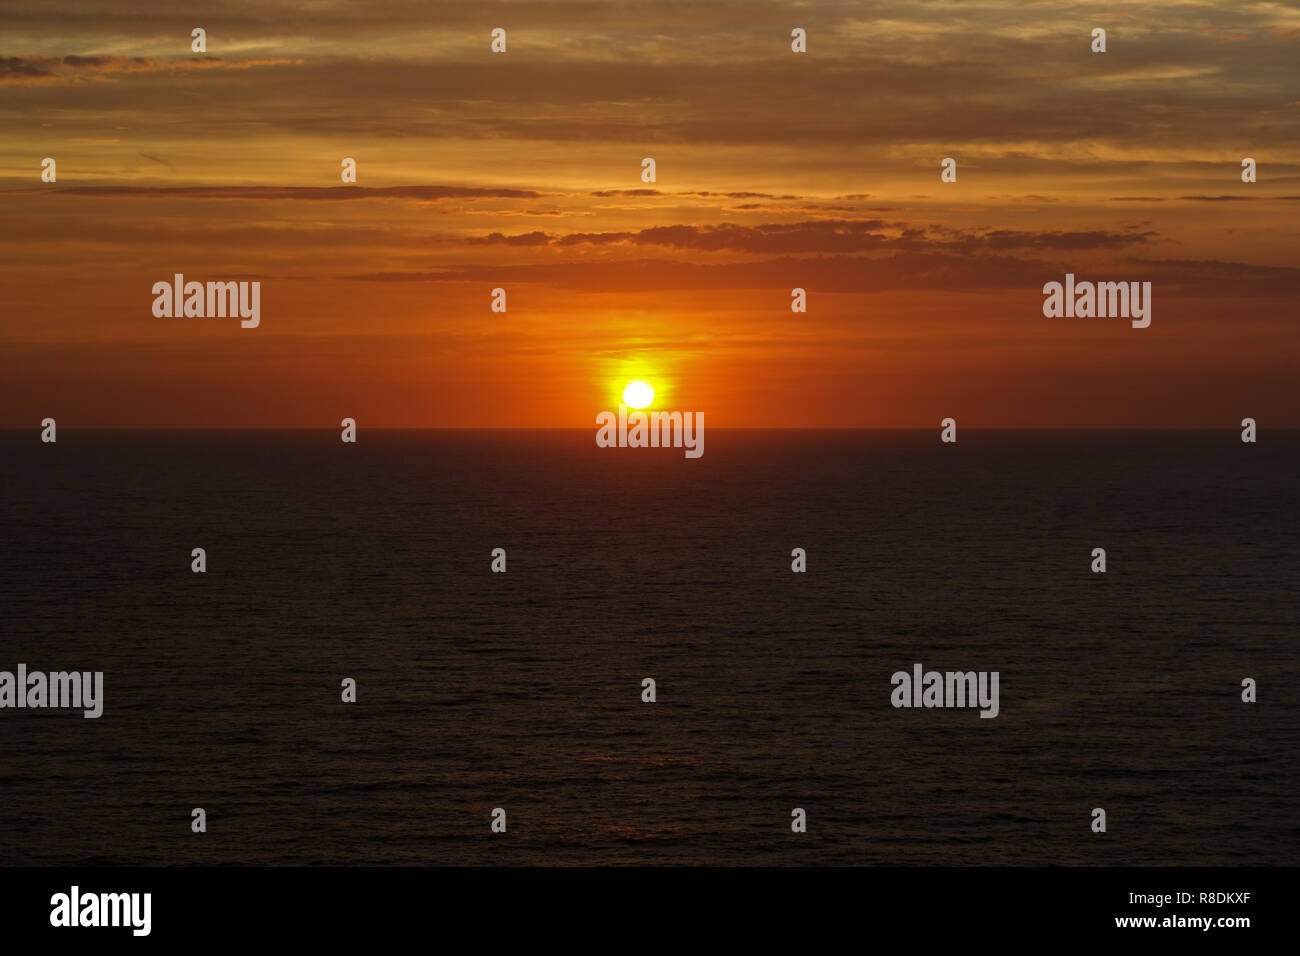 Sunrise, sun and sea Stock Photo